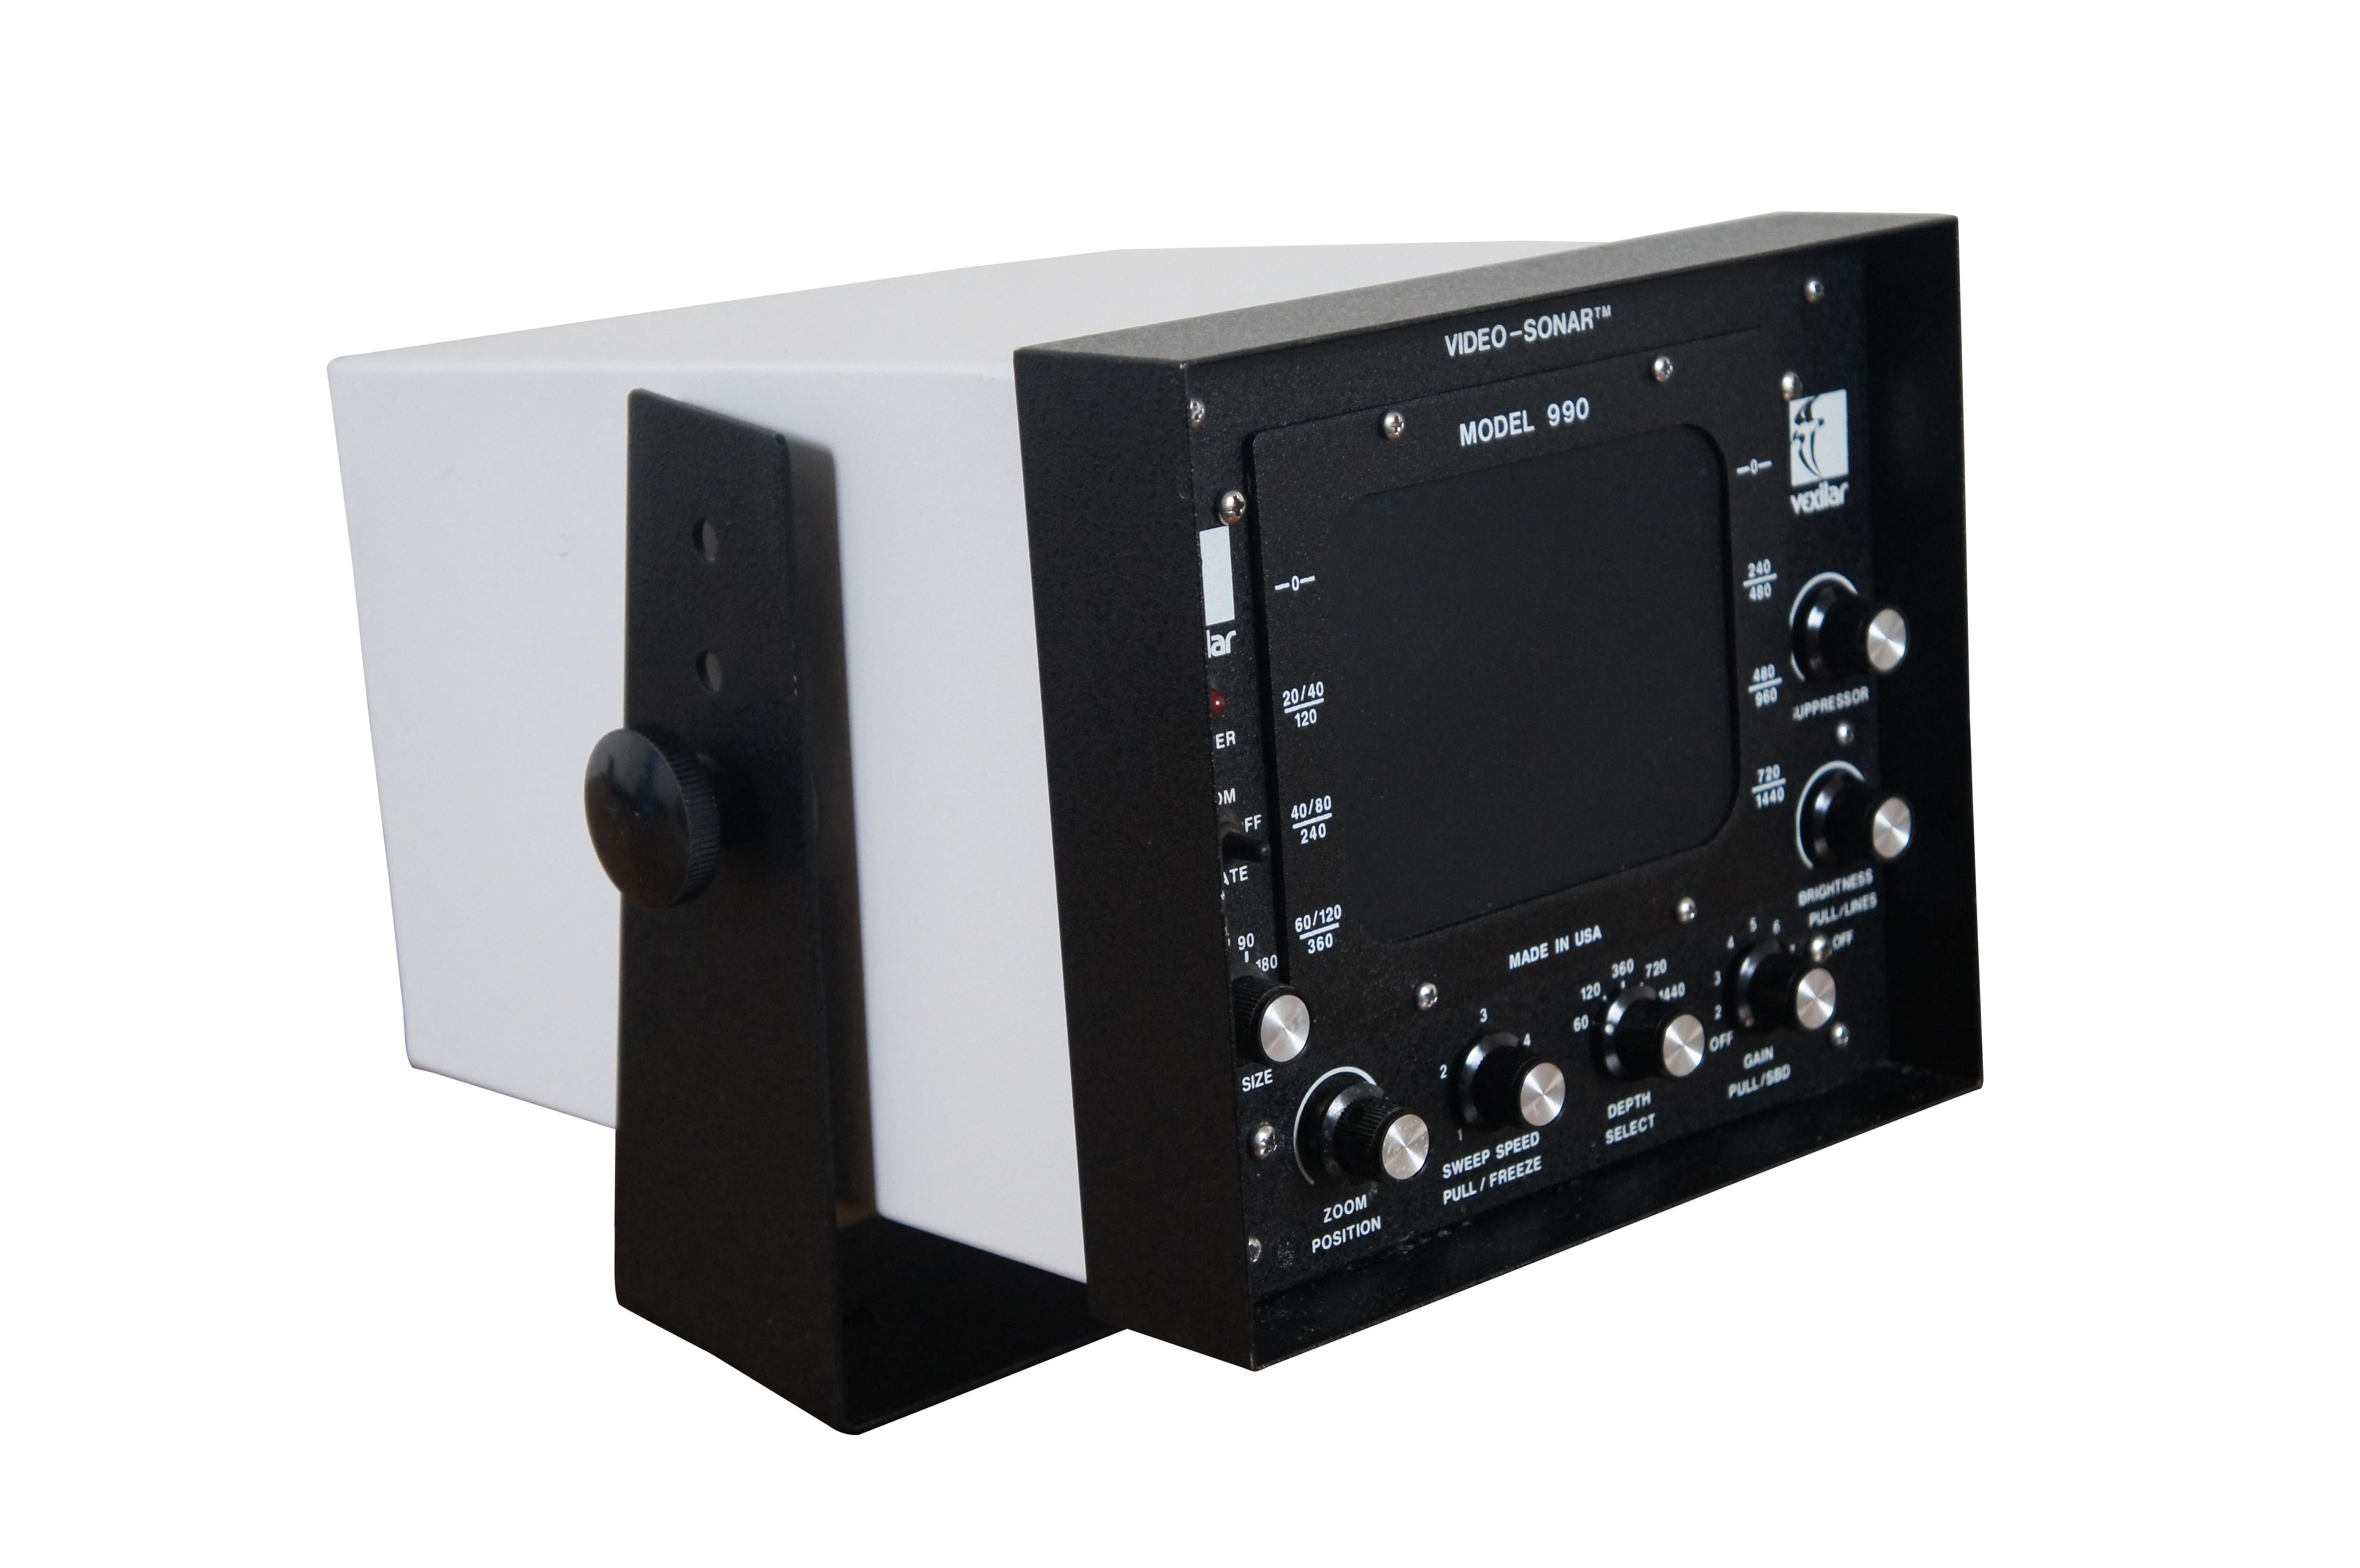 Rare sonar vidéo Vexilar modèle 990X datant des années 1970. Numéro de série 90430. Fabriqué par BH Electronics pour Vexilar Inc.  Le 990 était le modèle supérieur, après le 330 et le 660.

